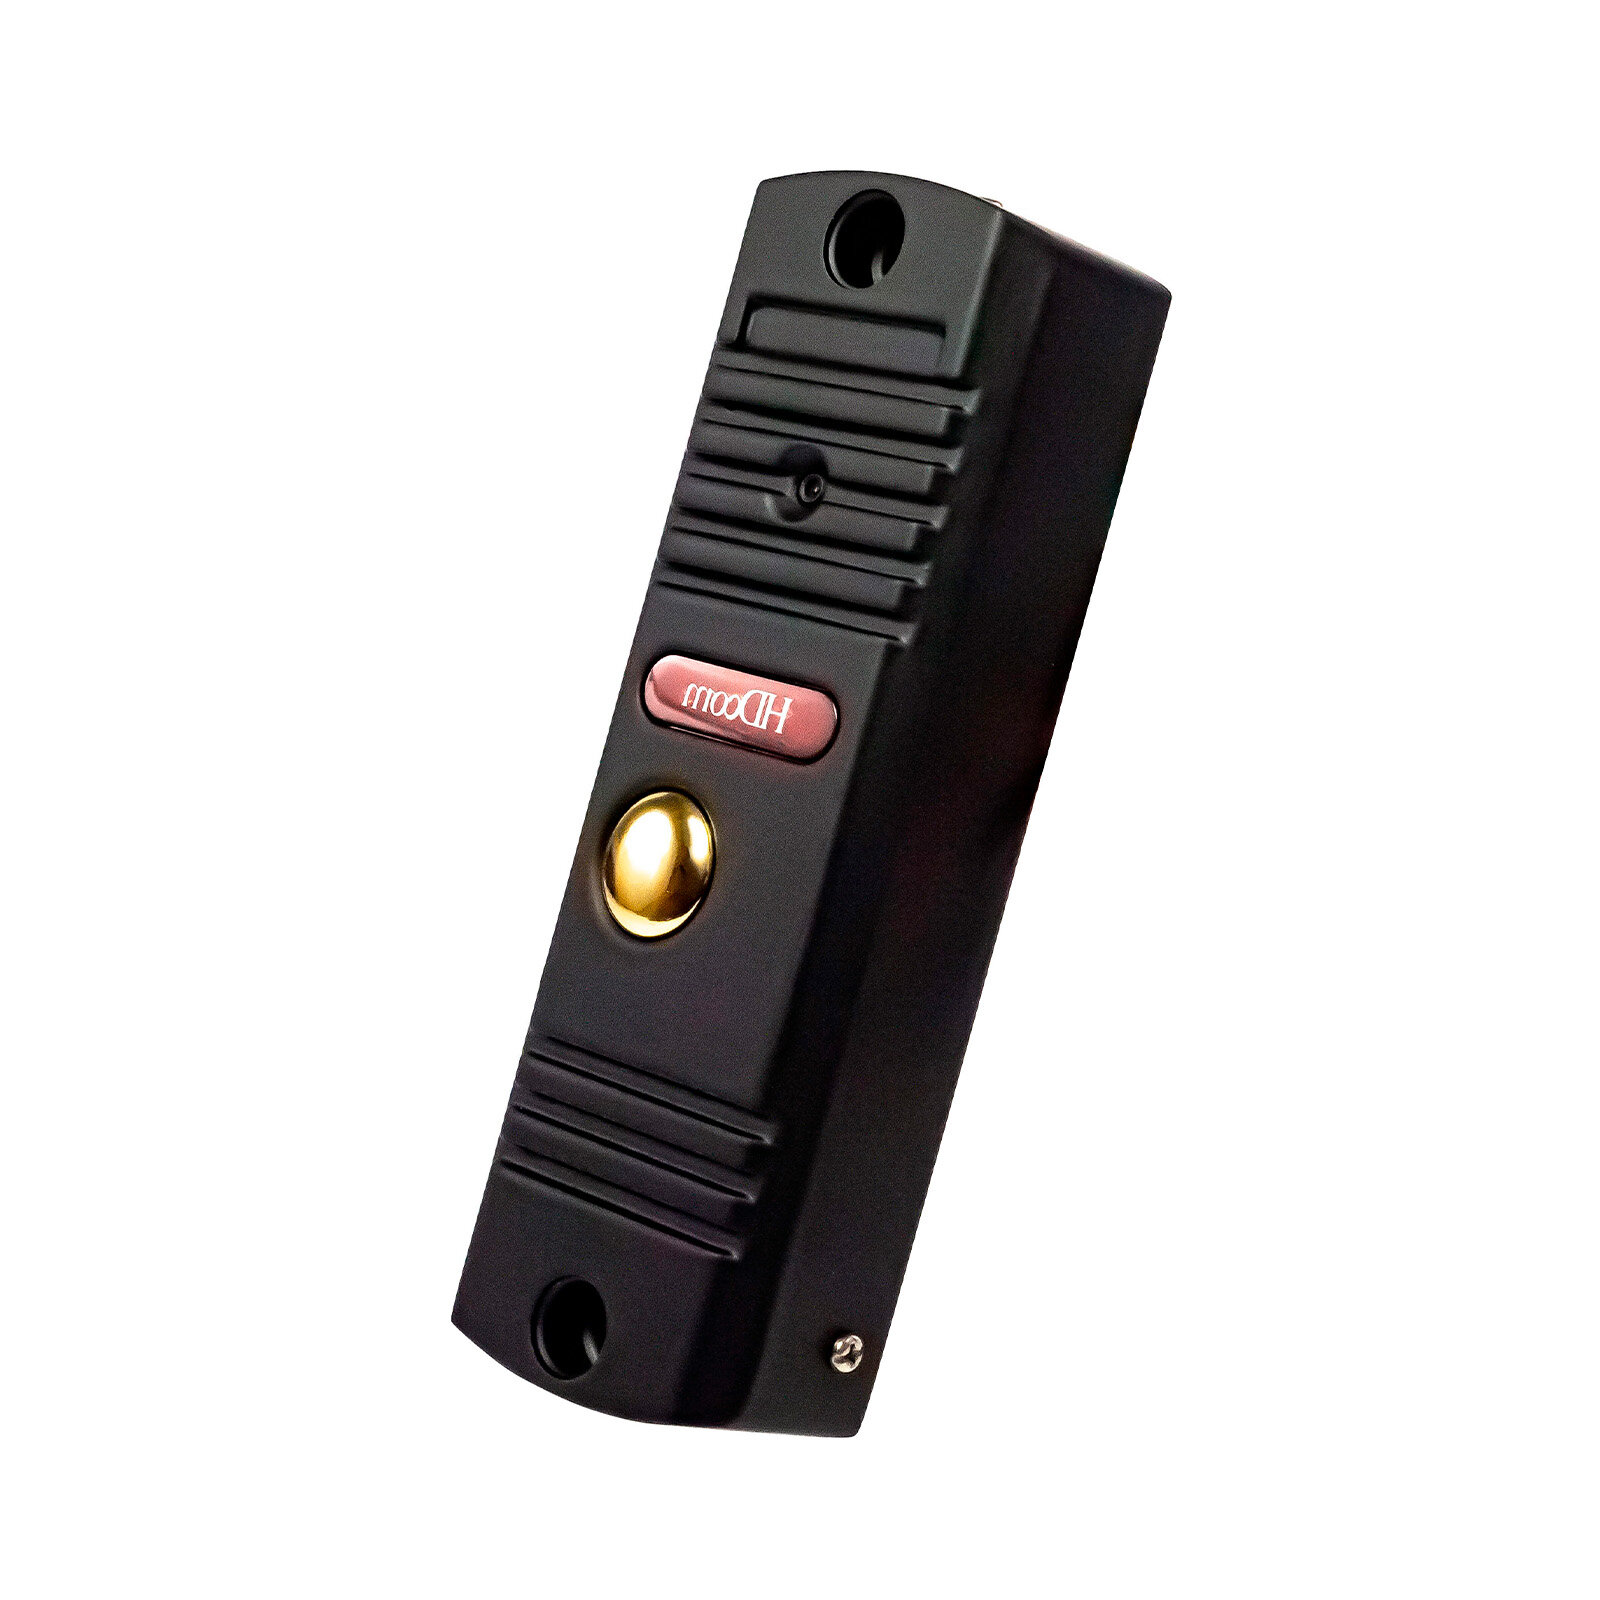 Вызывная видеопанель цветного видеодомофона 84201-EP-Mod: CP.60 (Q23125PAN). Ночная подсветка до 1,5 метров - цветная вызывная панель с камерой.